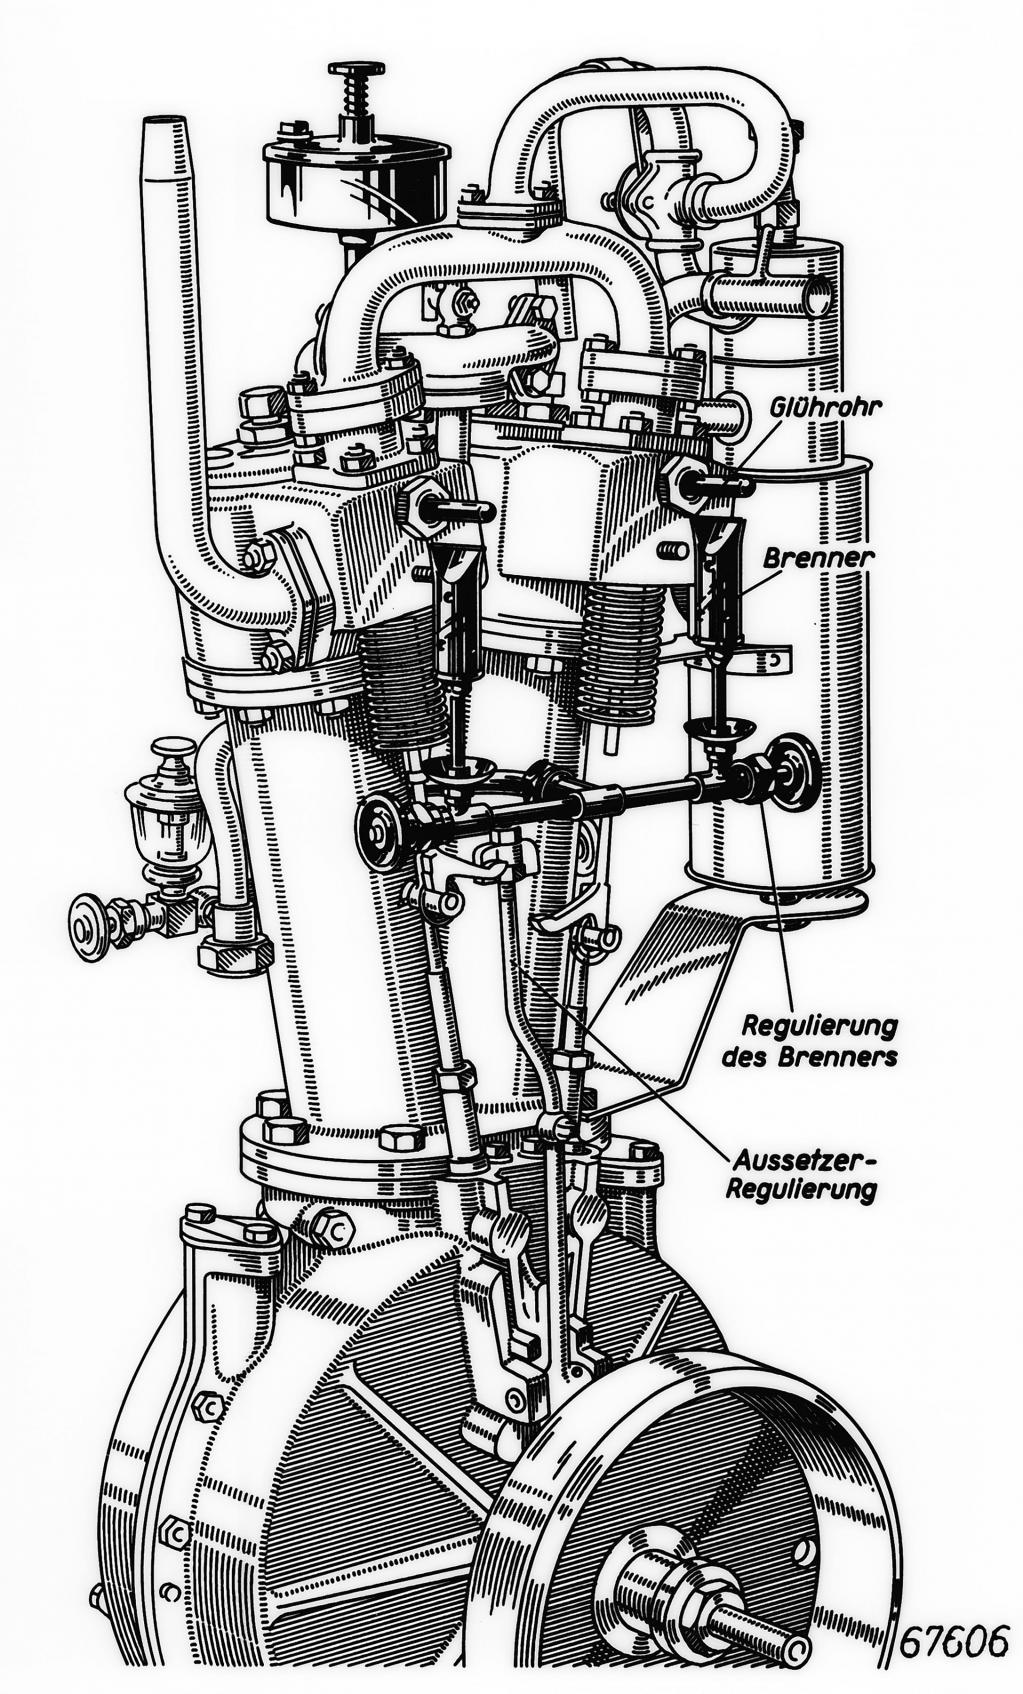 直列6気筒エンジンが優れている理由 メルセデスが直6を復活させたワケ Bmwがこだわる根拠 Motor Fantech モーターファンテック